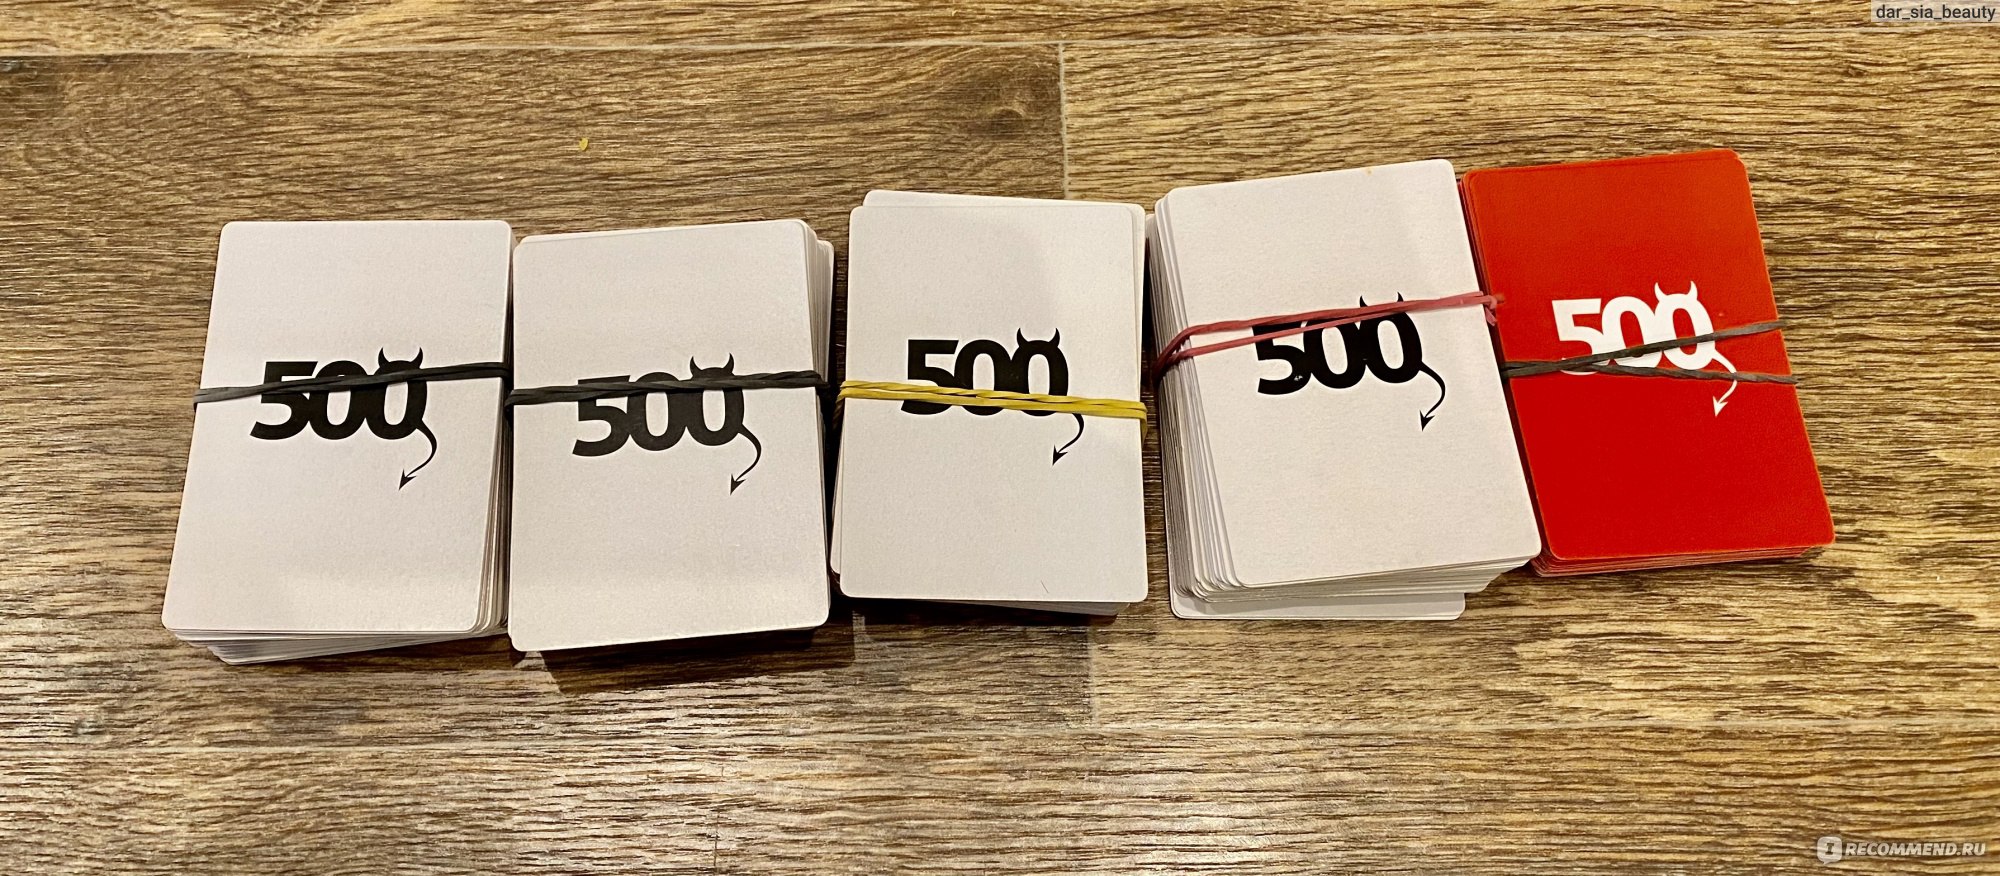 Настольная игра Cosmodrome Games "500 злобных карт" фото